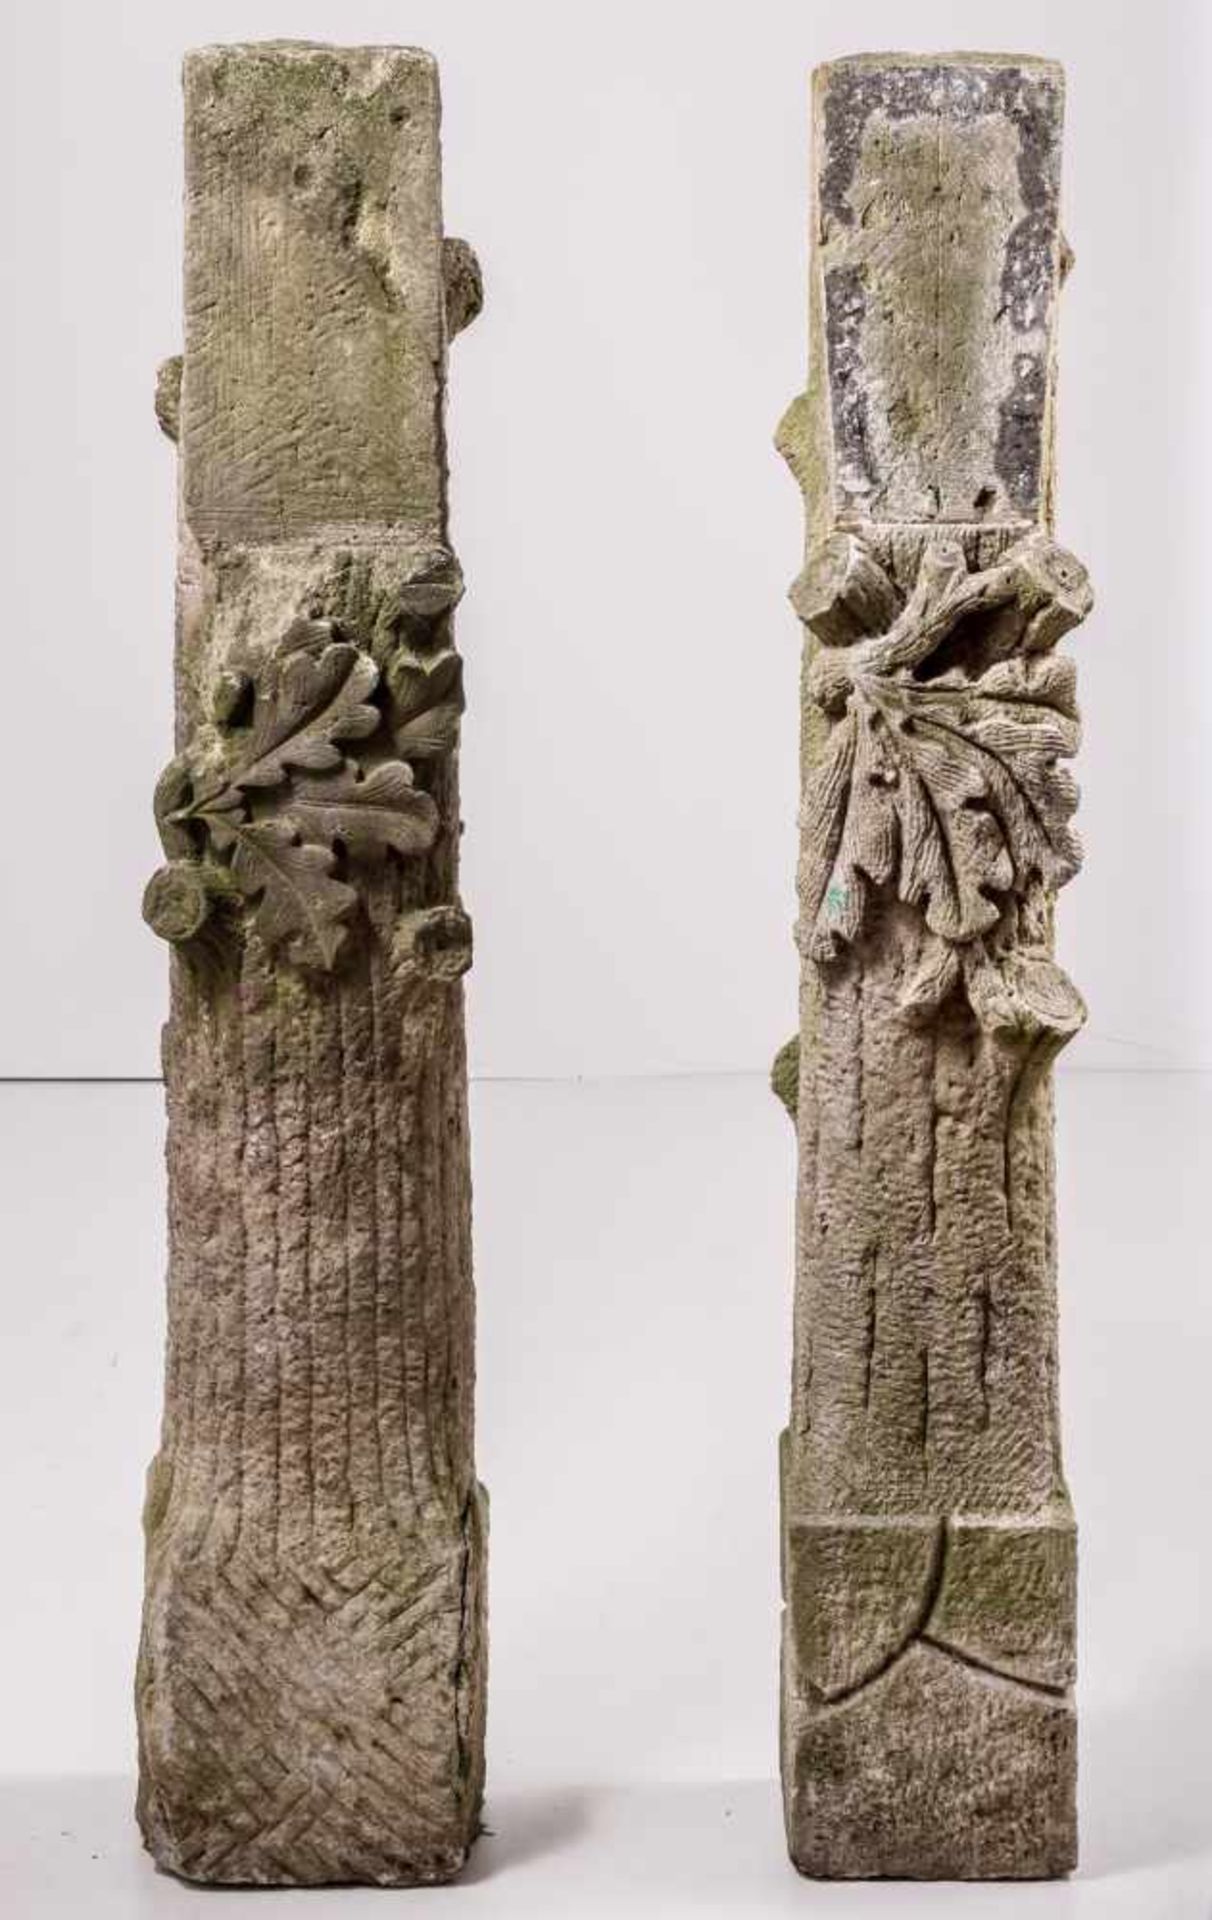 Zwei Sandsteinstelen als Baumstümpfe mit AstansätzenVorstehendes Eichenlaub und abgeschrägtes